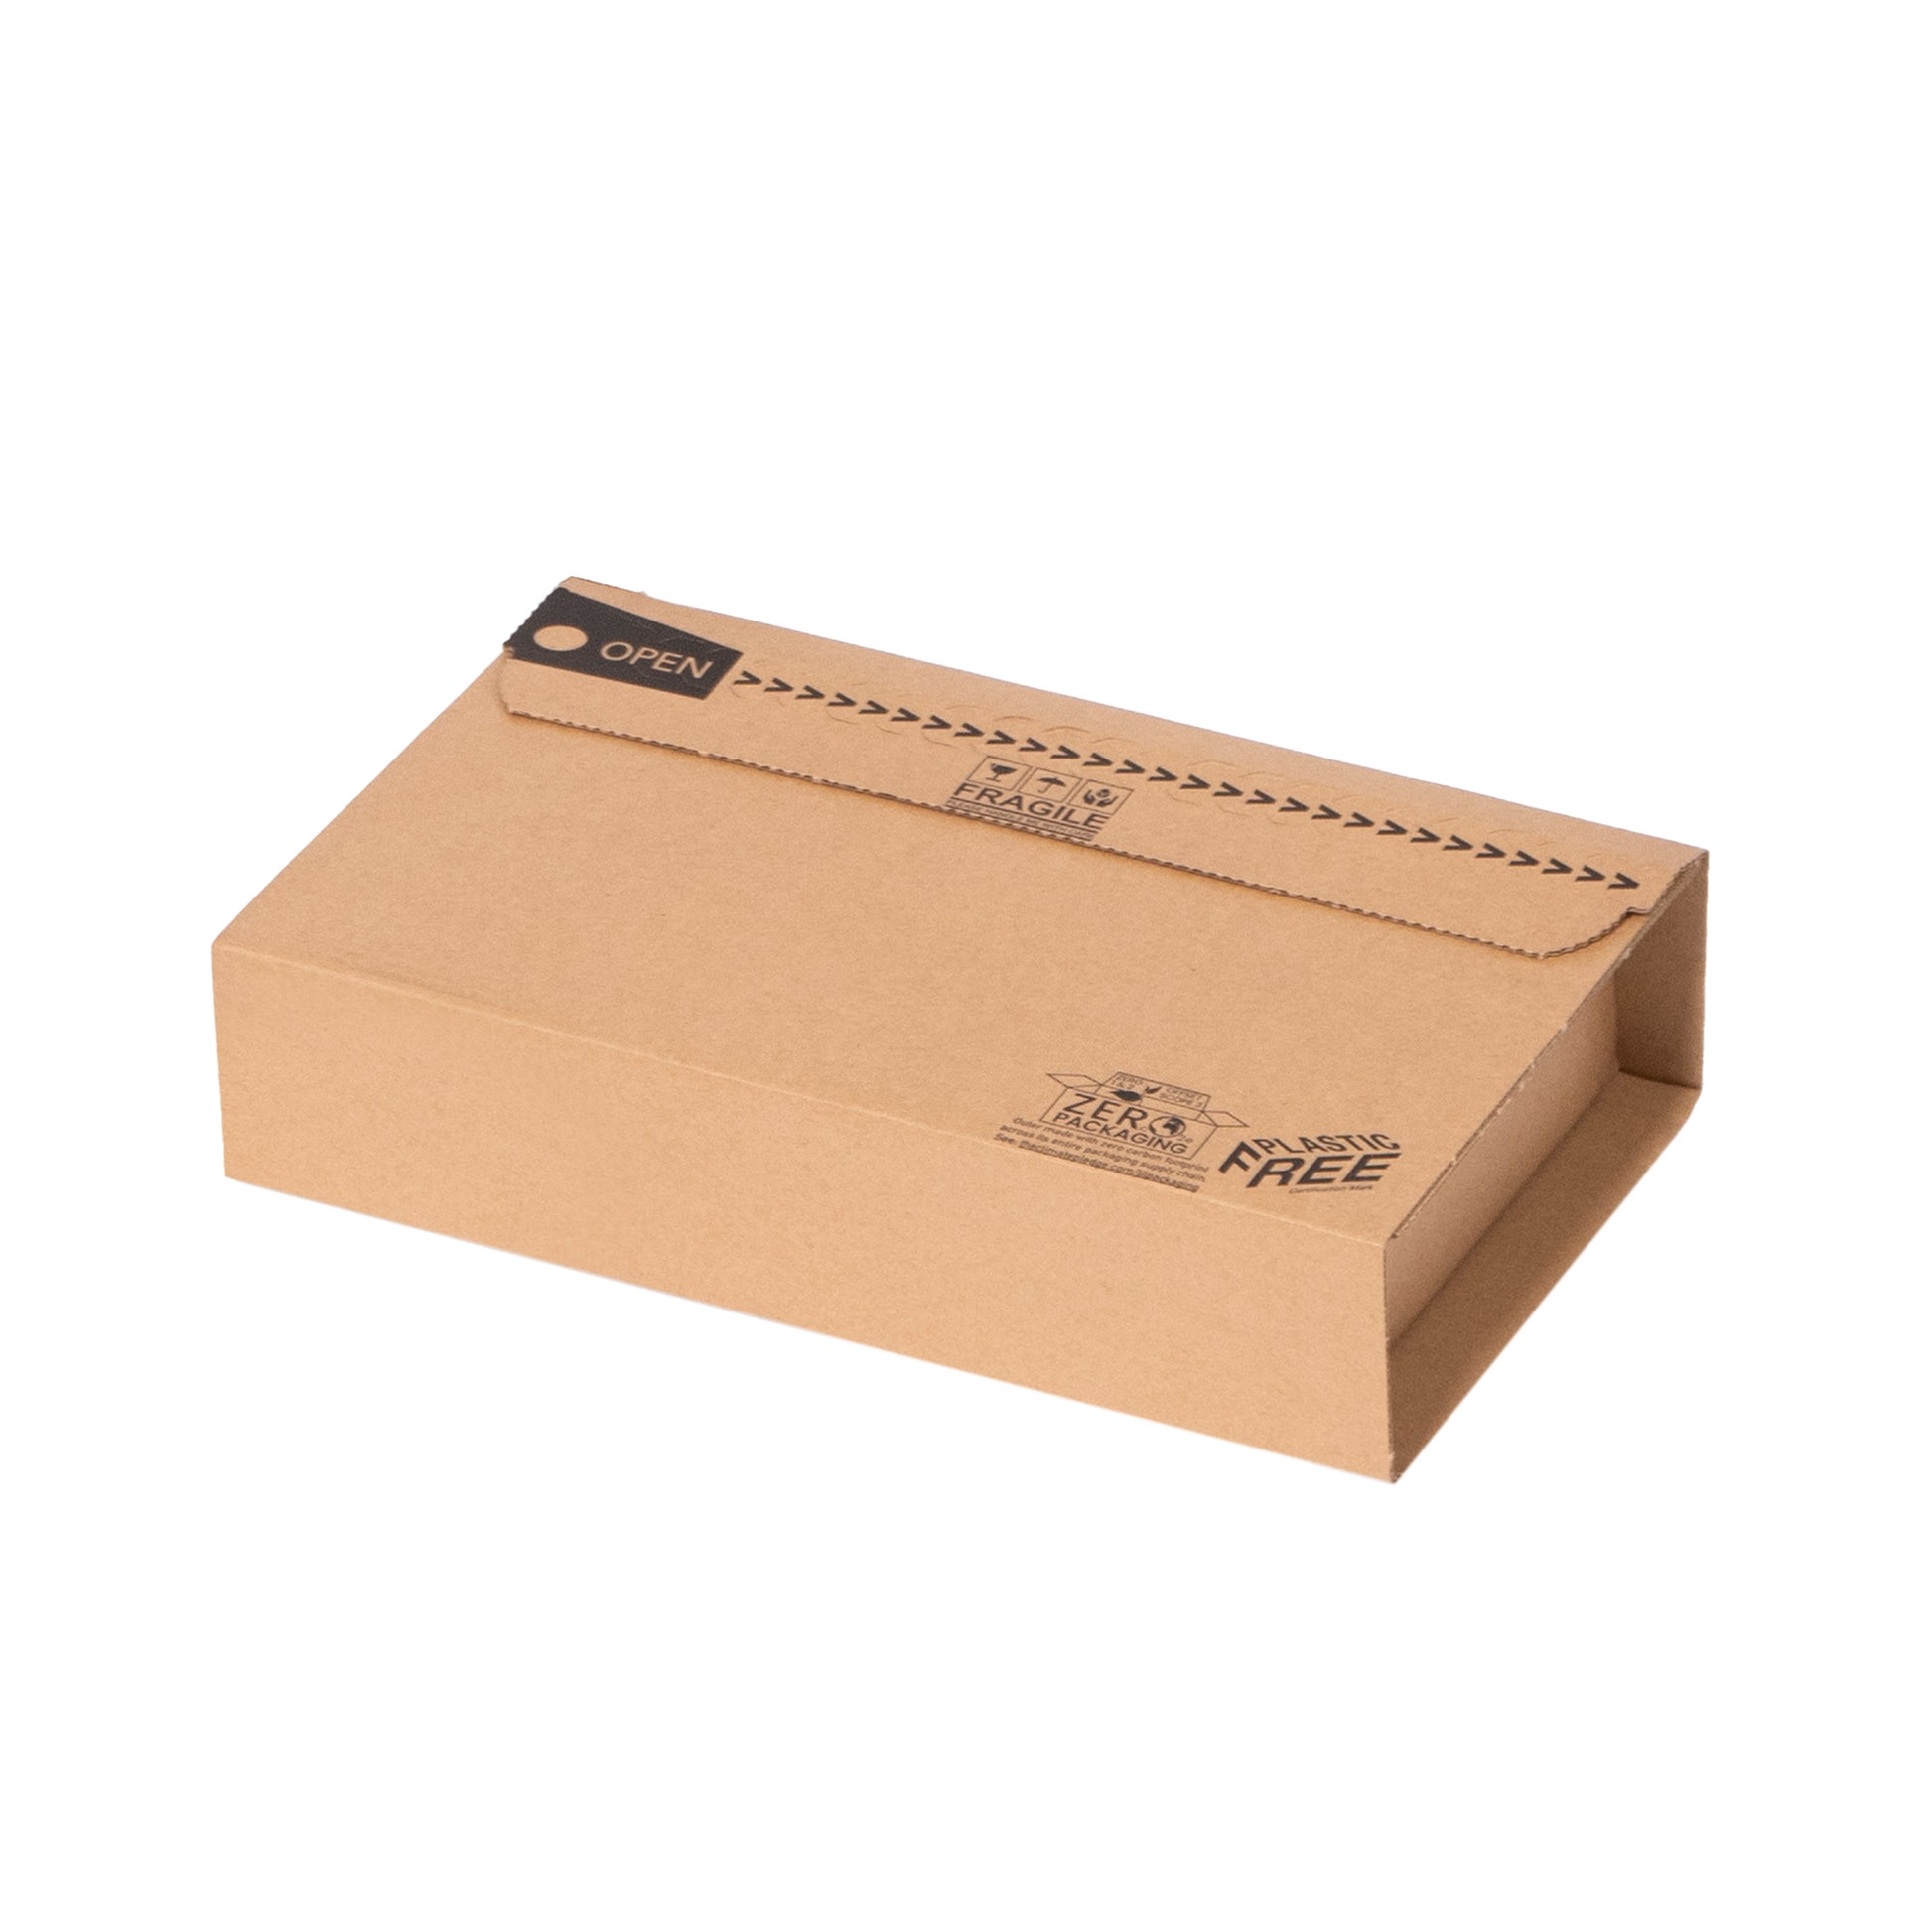 C1 Book Wrap Cardboard Packaging | Lil Packaging